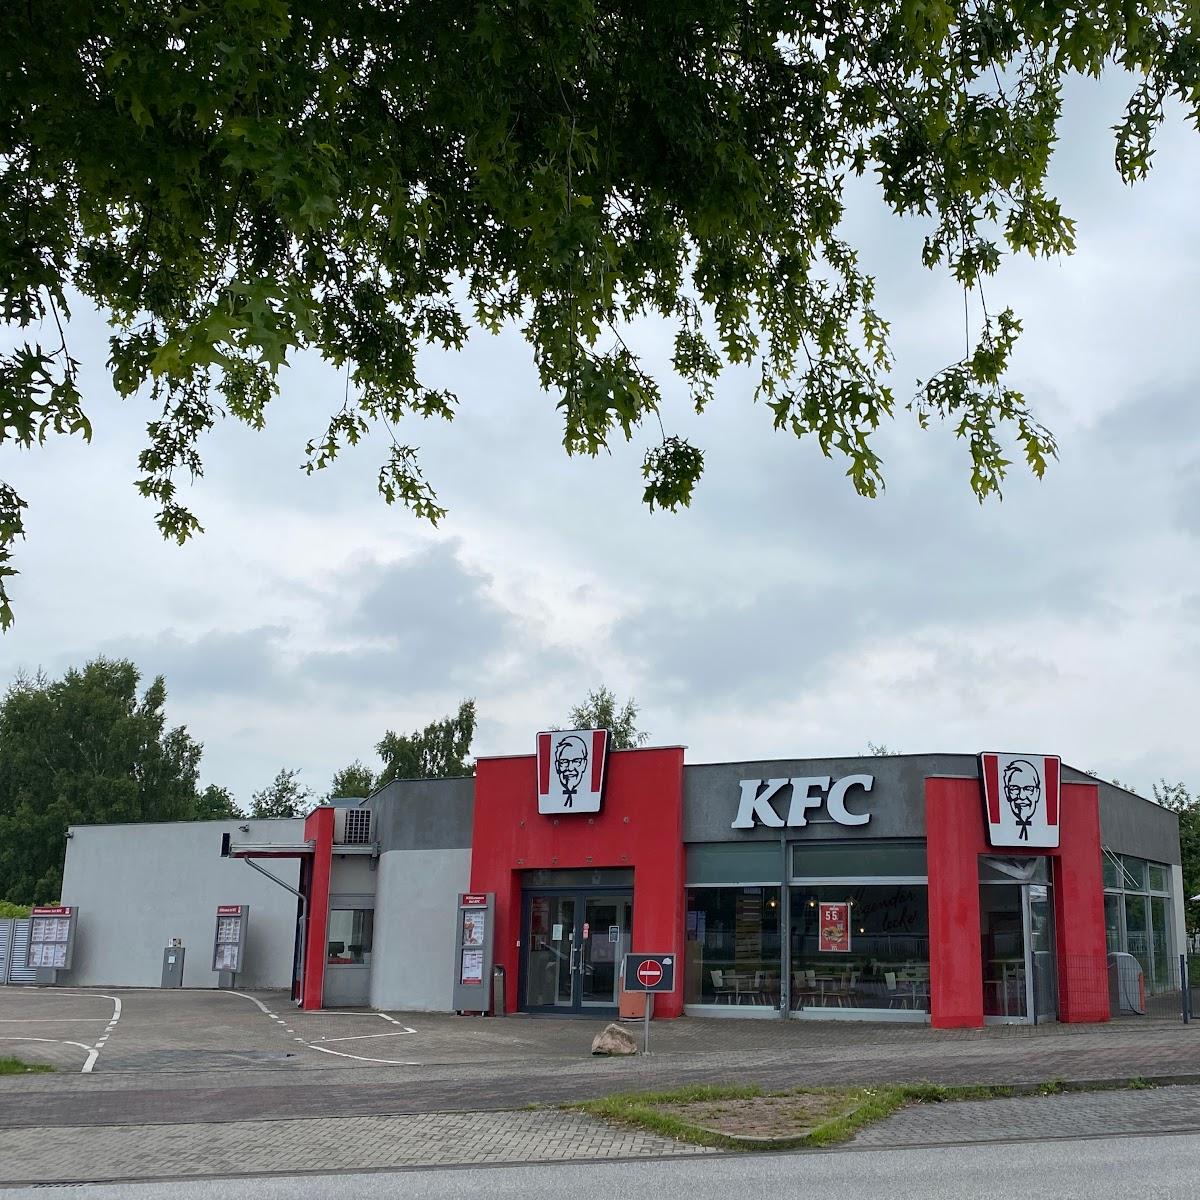 Restaurant "Kentucky Fried Chicken" in Henstedt-Ulzburg